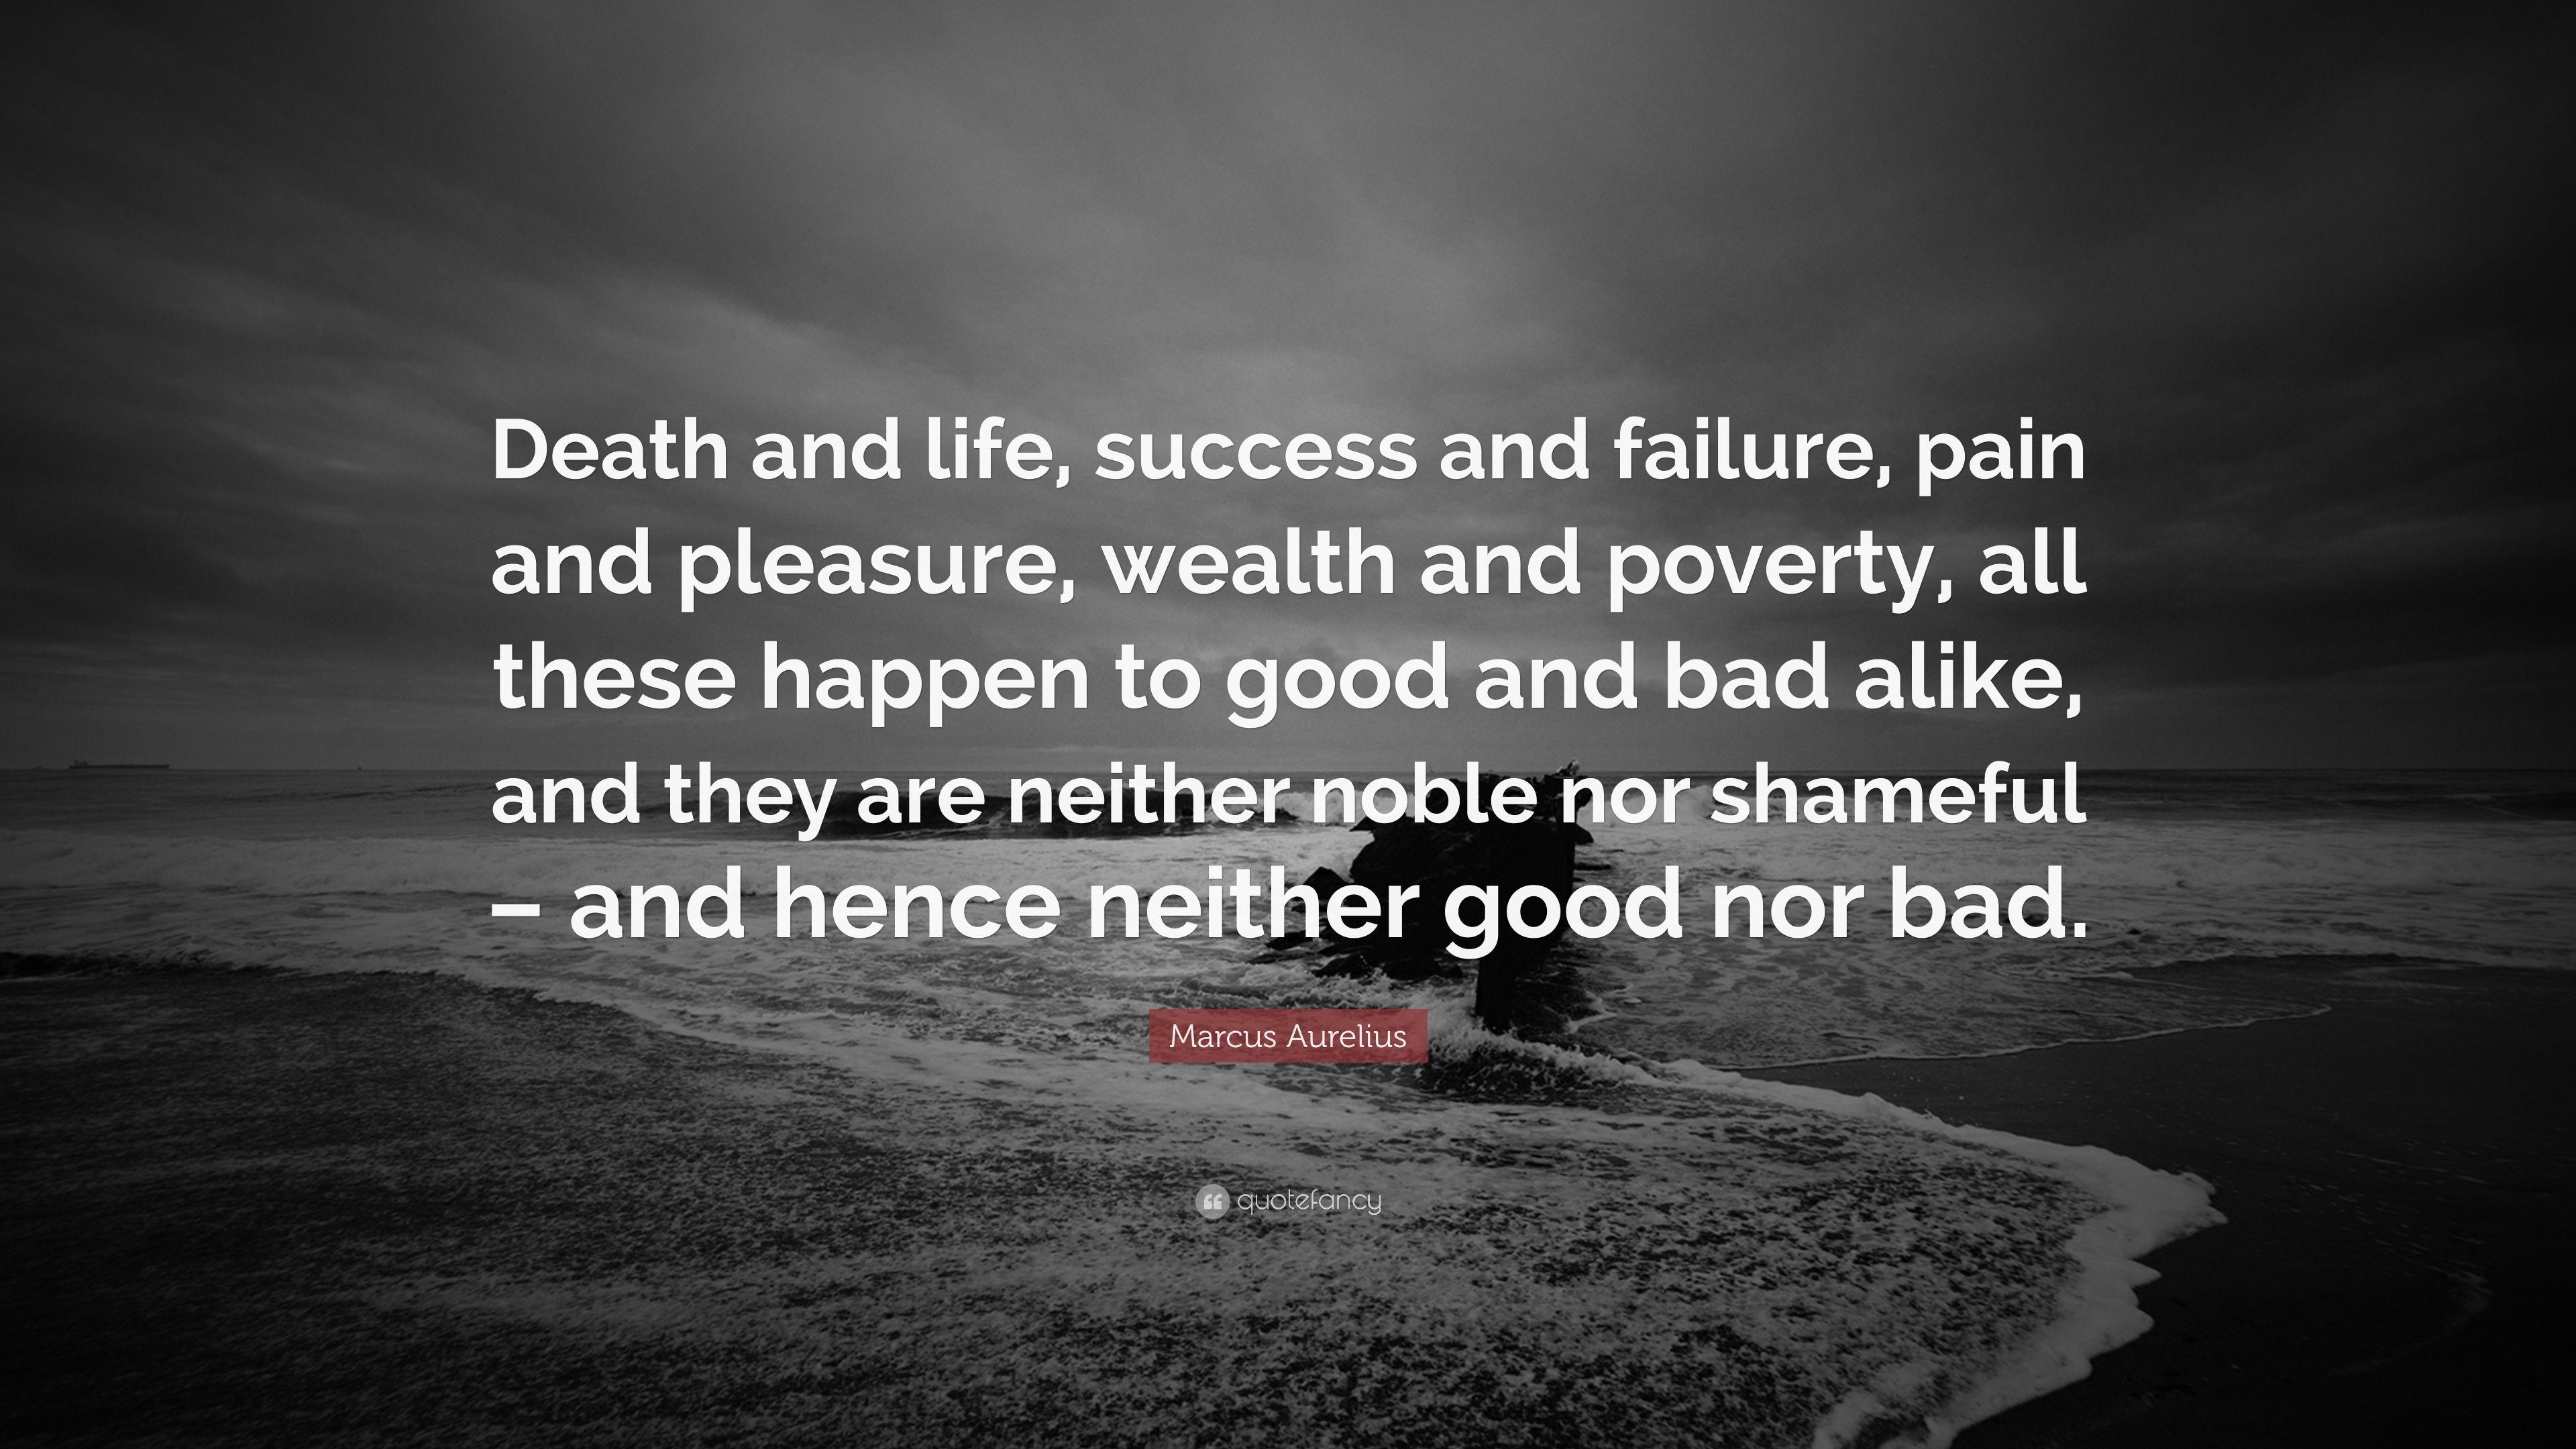 Marcus Aurelius Quote: “Death and life, success and failure, pain